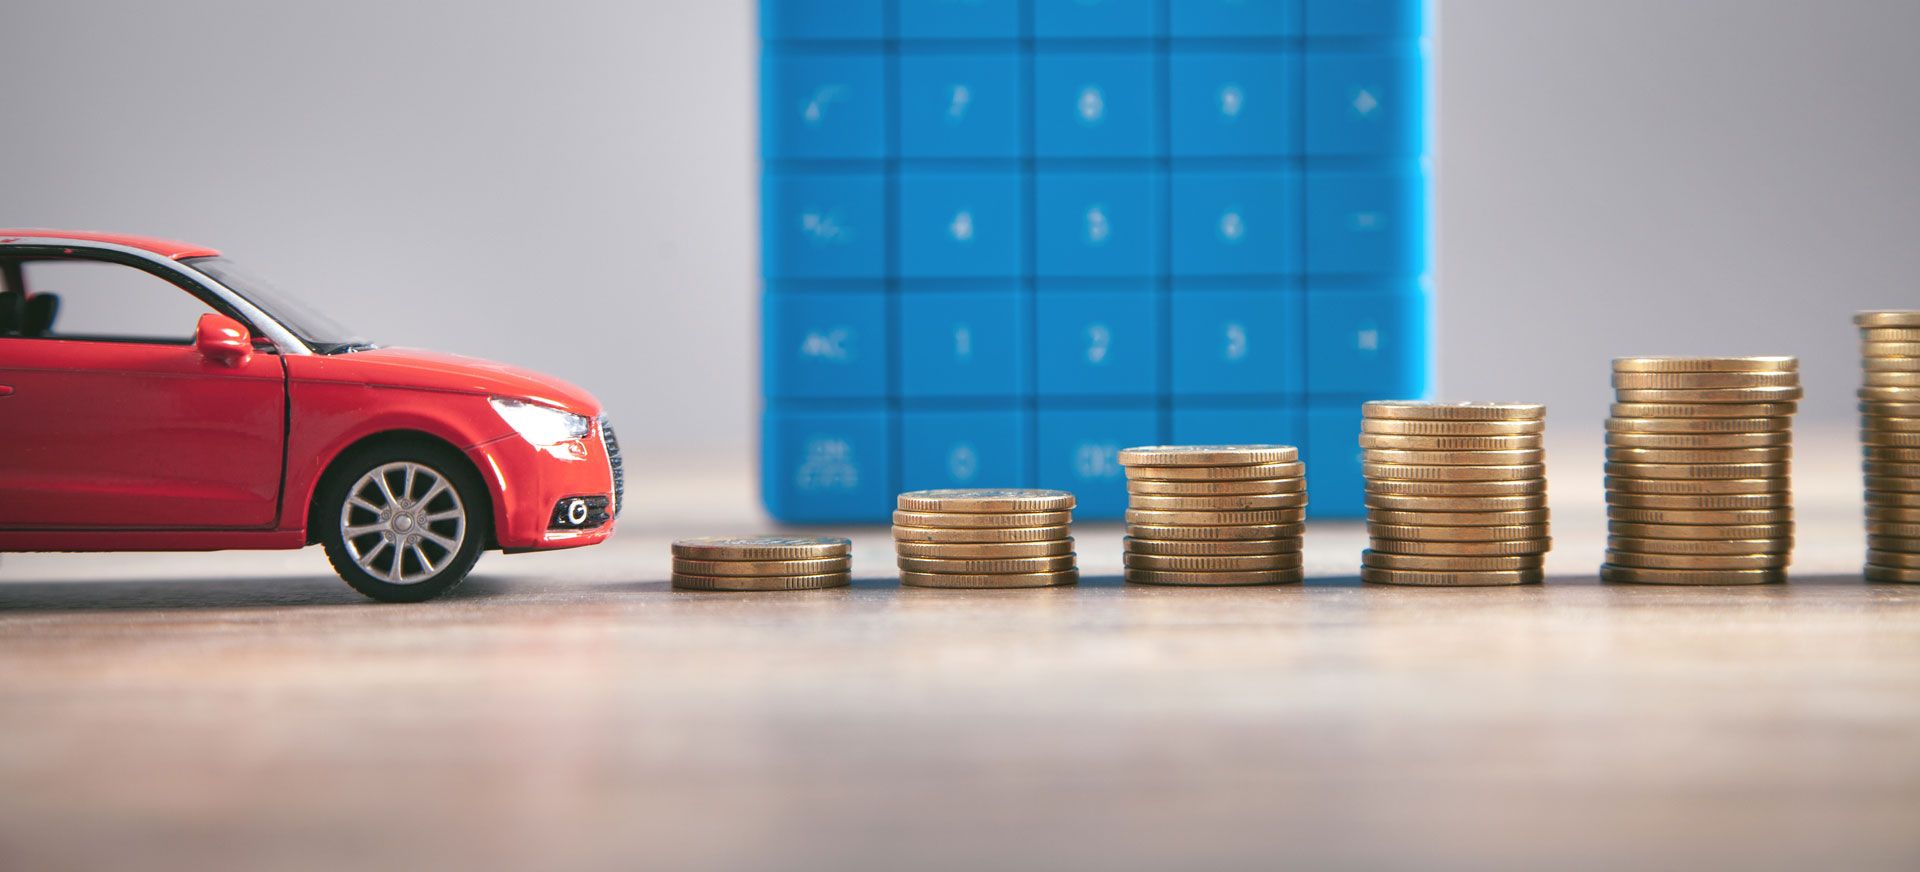 Imagem ilustrativa de um carro vermelho e algumas moedas empilhadas